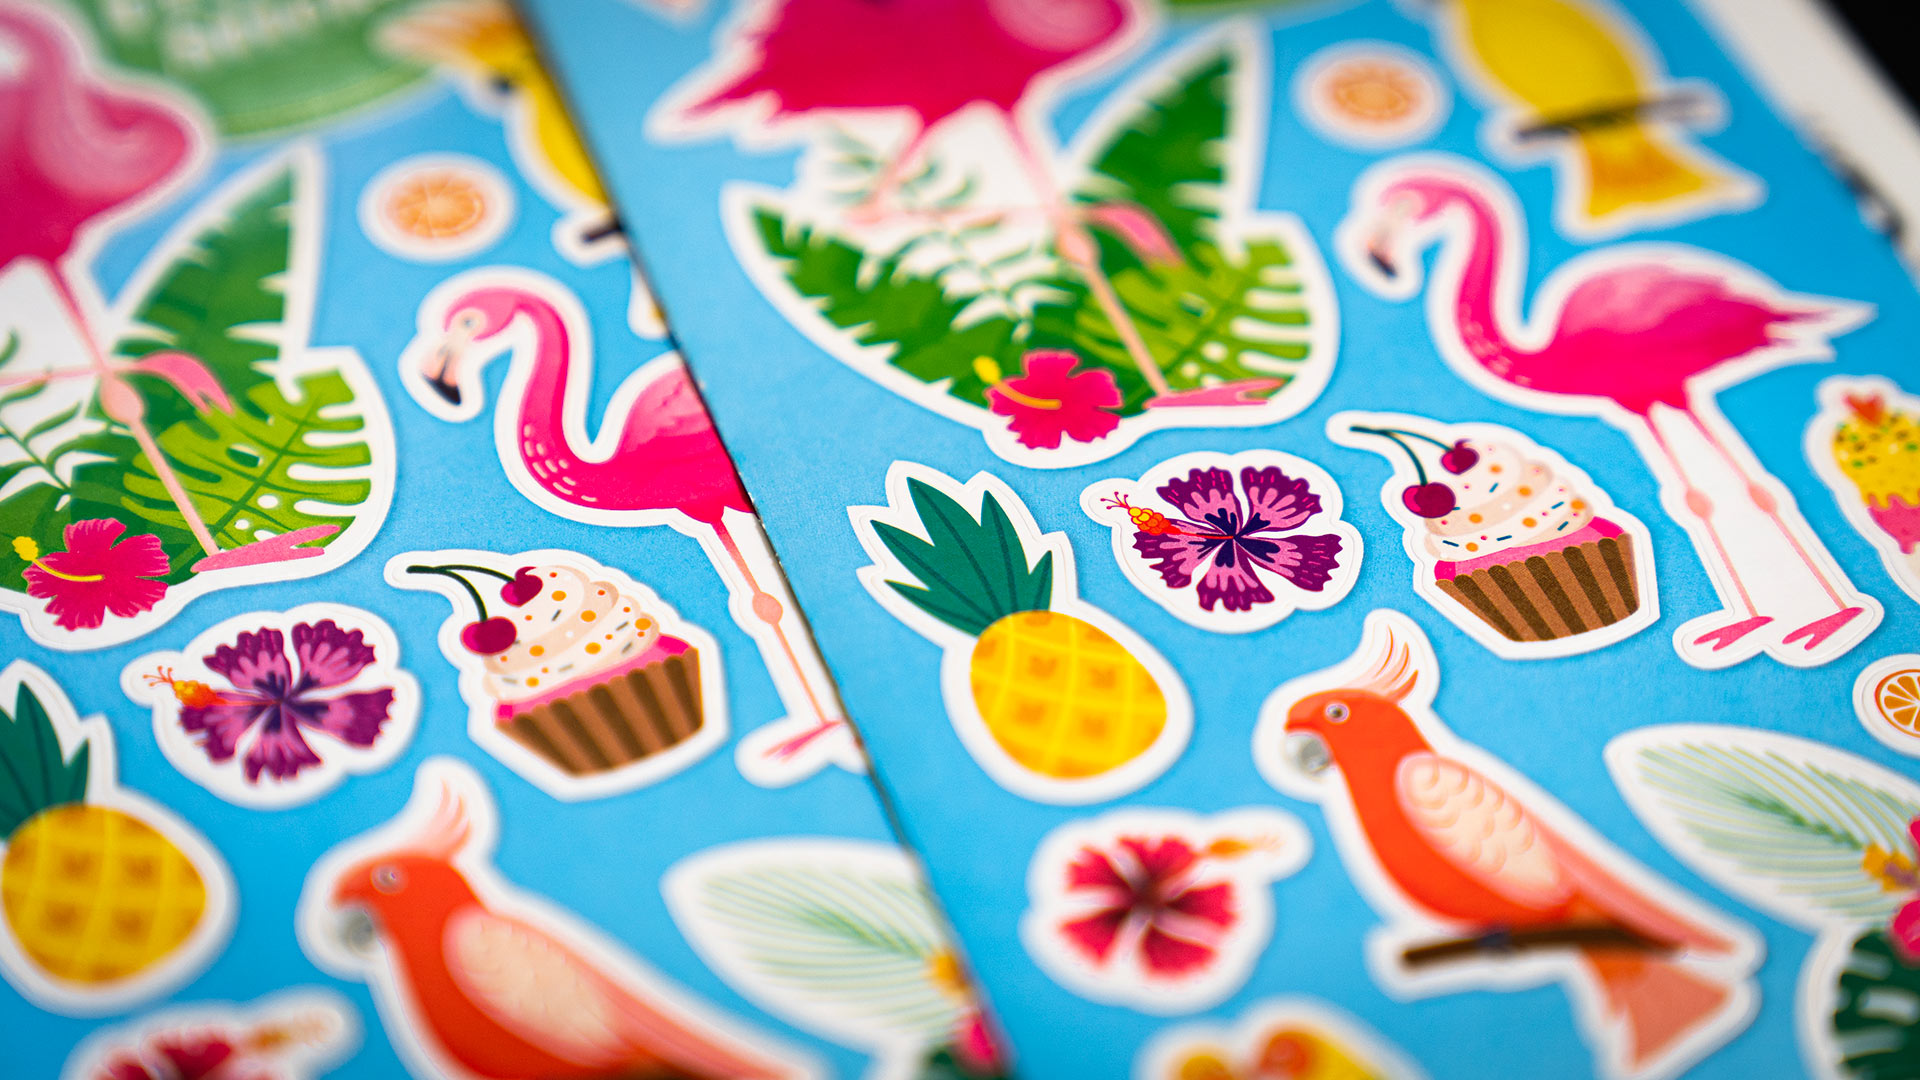 Flappe mit Stickern zum Theme tropischer Sommer